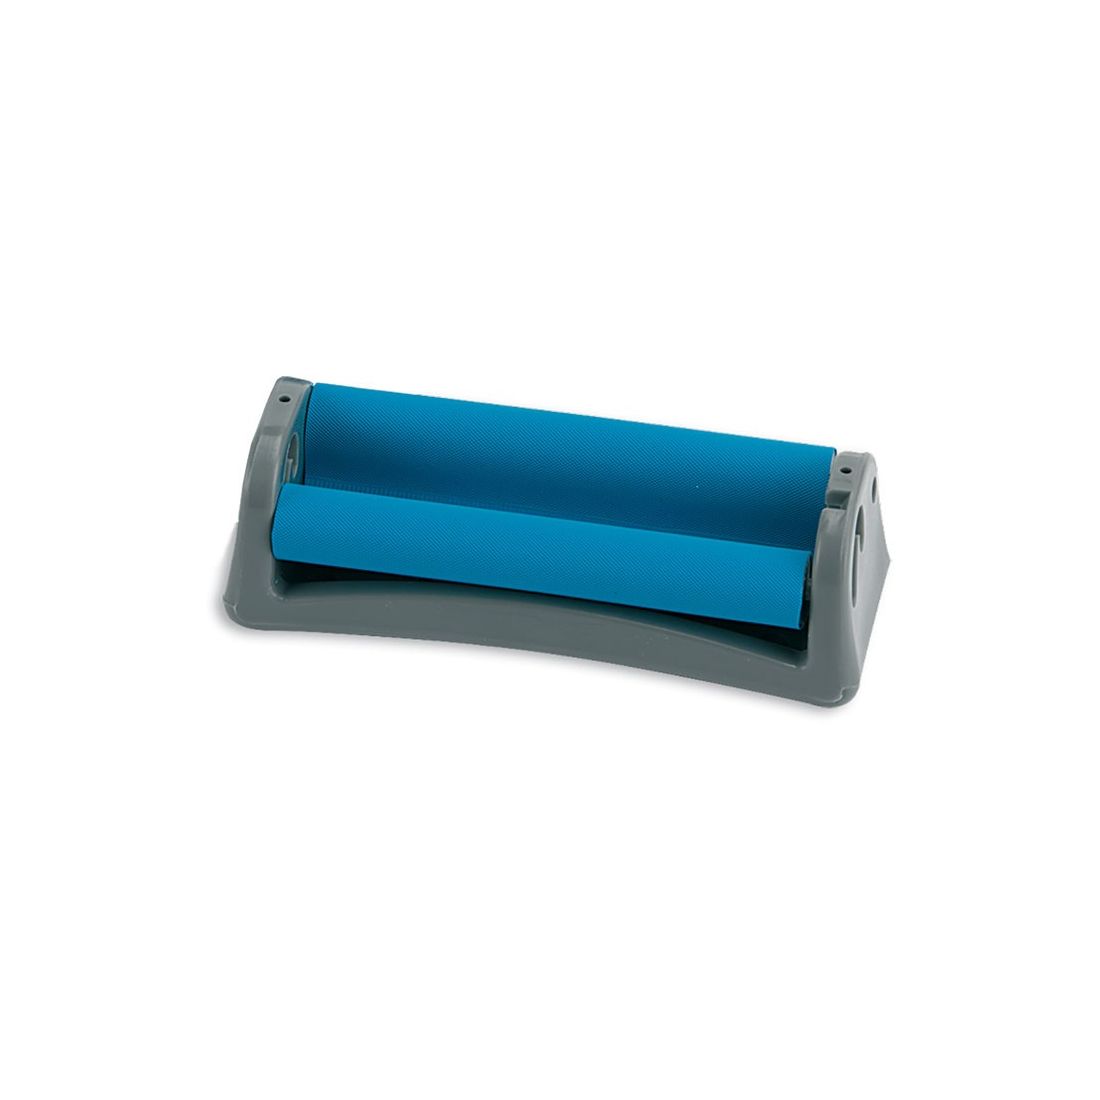 Macchinetta in plastica (ROLLATORE) RIZLA REGULAR per rollare sigarette da  70mm (CARTINE CORTE).